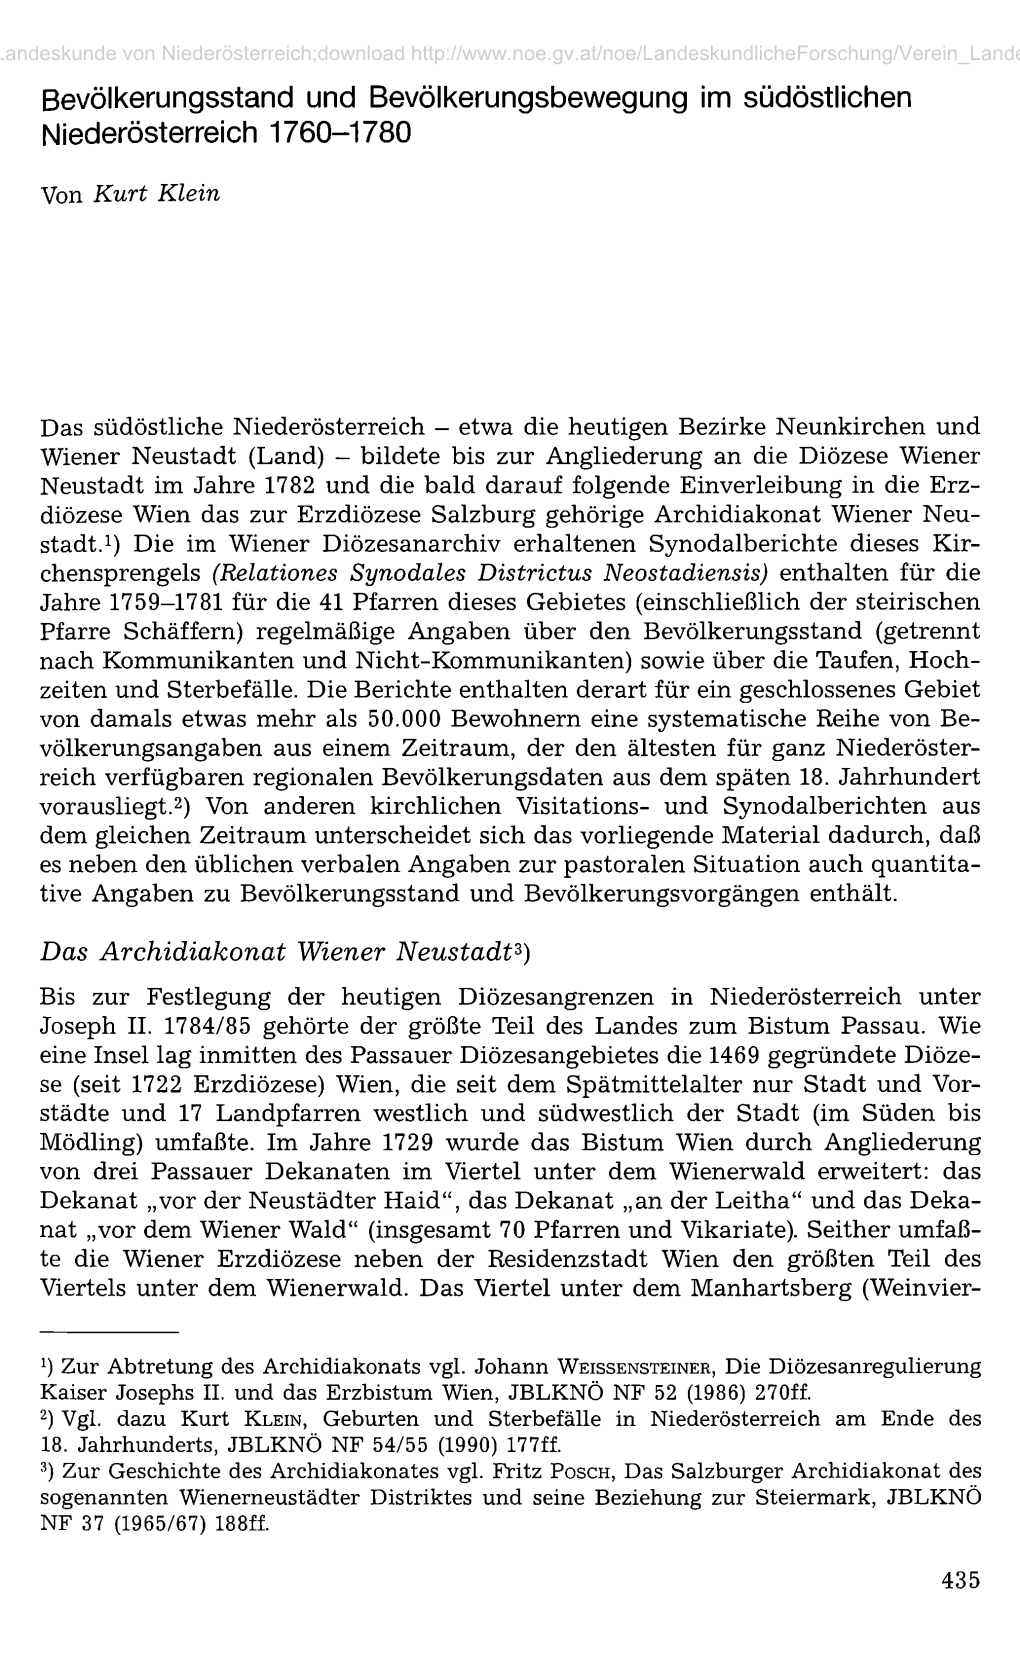 Bevölkerungsstand Und Bevölkerungsbewegung Im Südöstlichen Niederösterreich 1760-1780